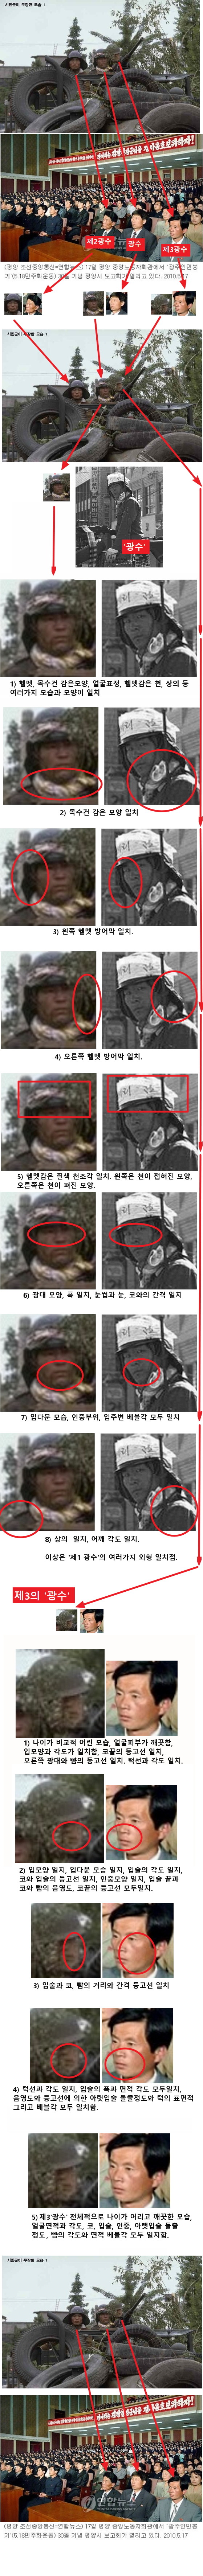 ▲ 시스템클럽(http://www.systemclub.co.kr/) 홈페이지에 올라와 있는, ‘광수’(광주사태 당시 침투한 북한 특수군) 관련 자료. ⓒ 시스템클럽 홈페이지 캡처